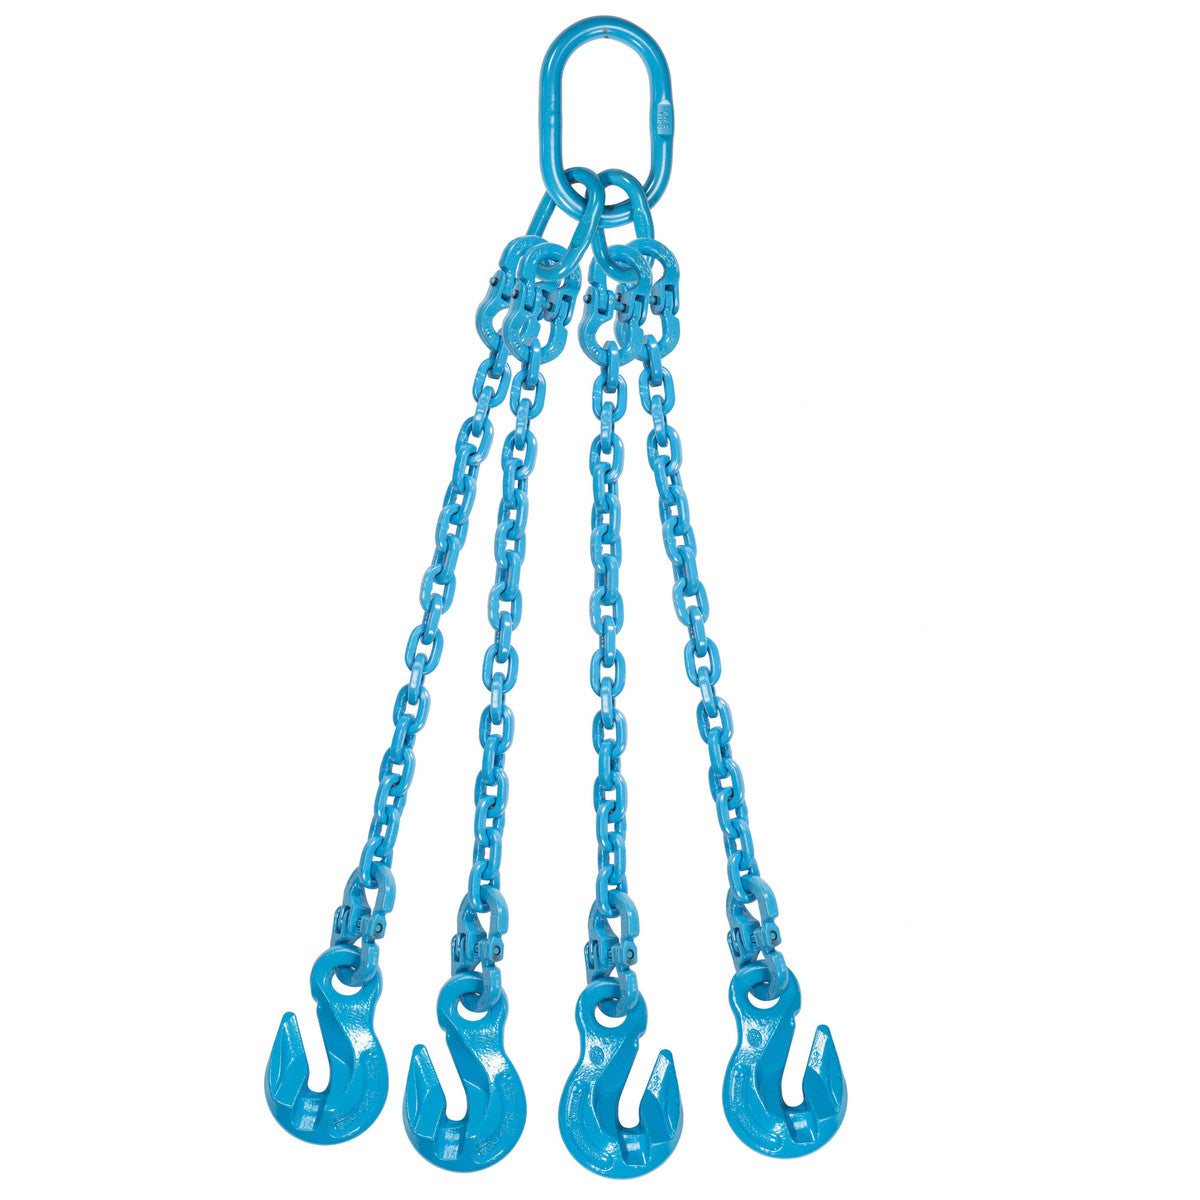 9/32" x 16' - Pewag 4 Leg Chain Sling w/ Grab Hooks - Grade 120